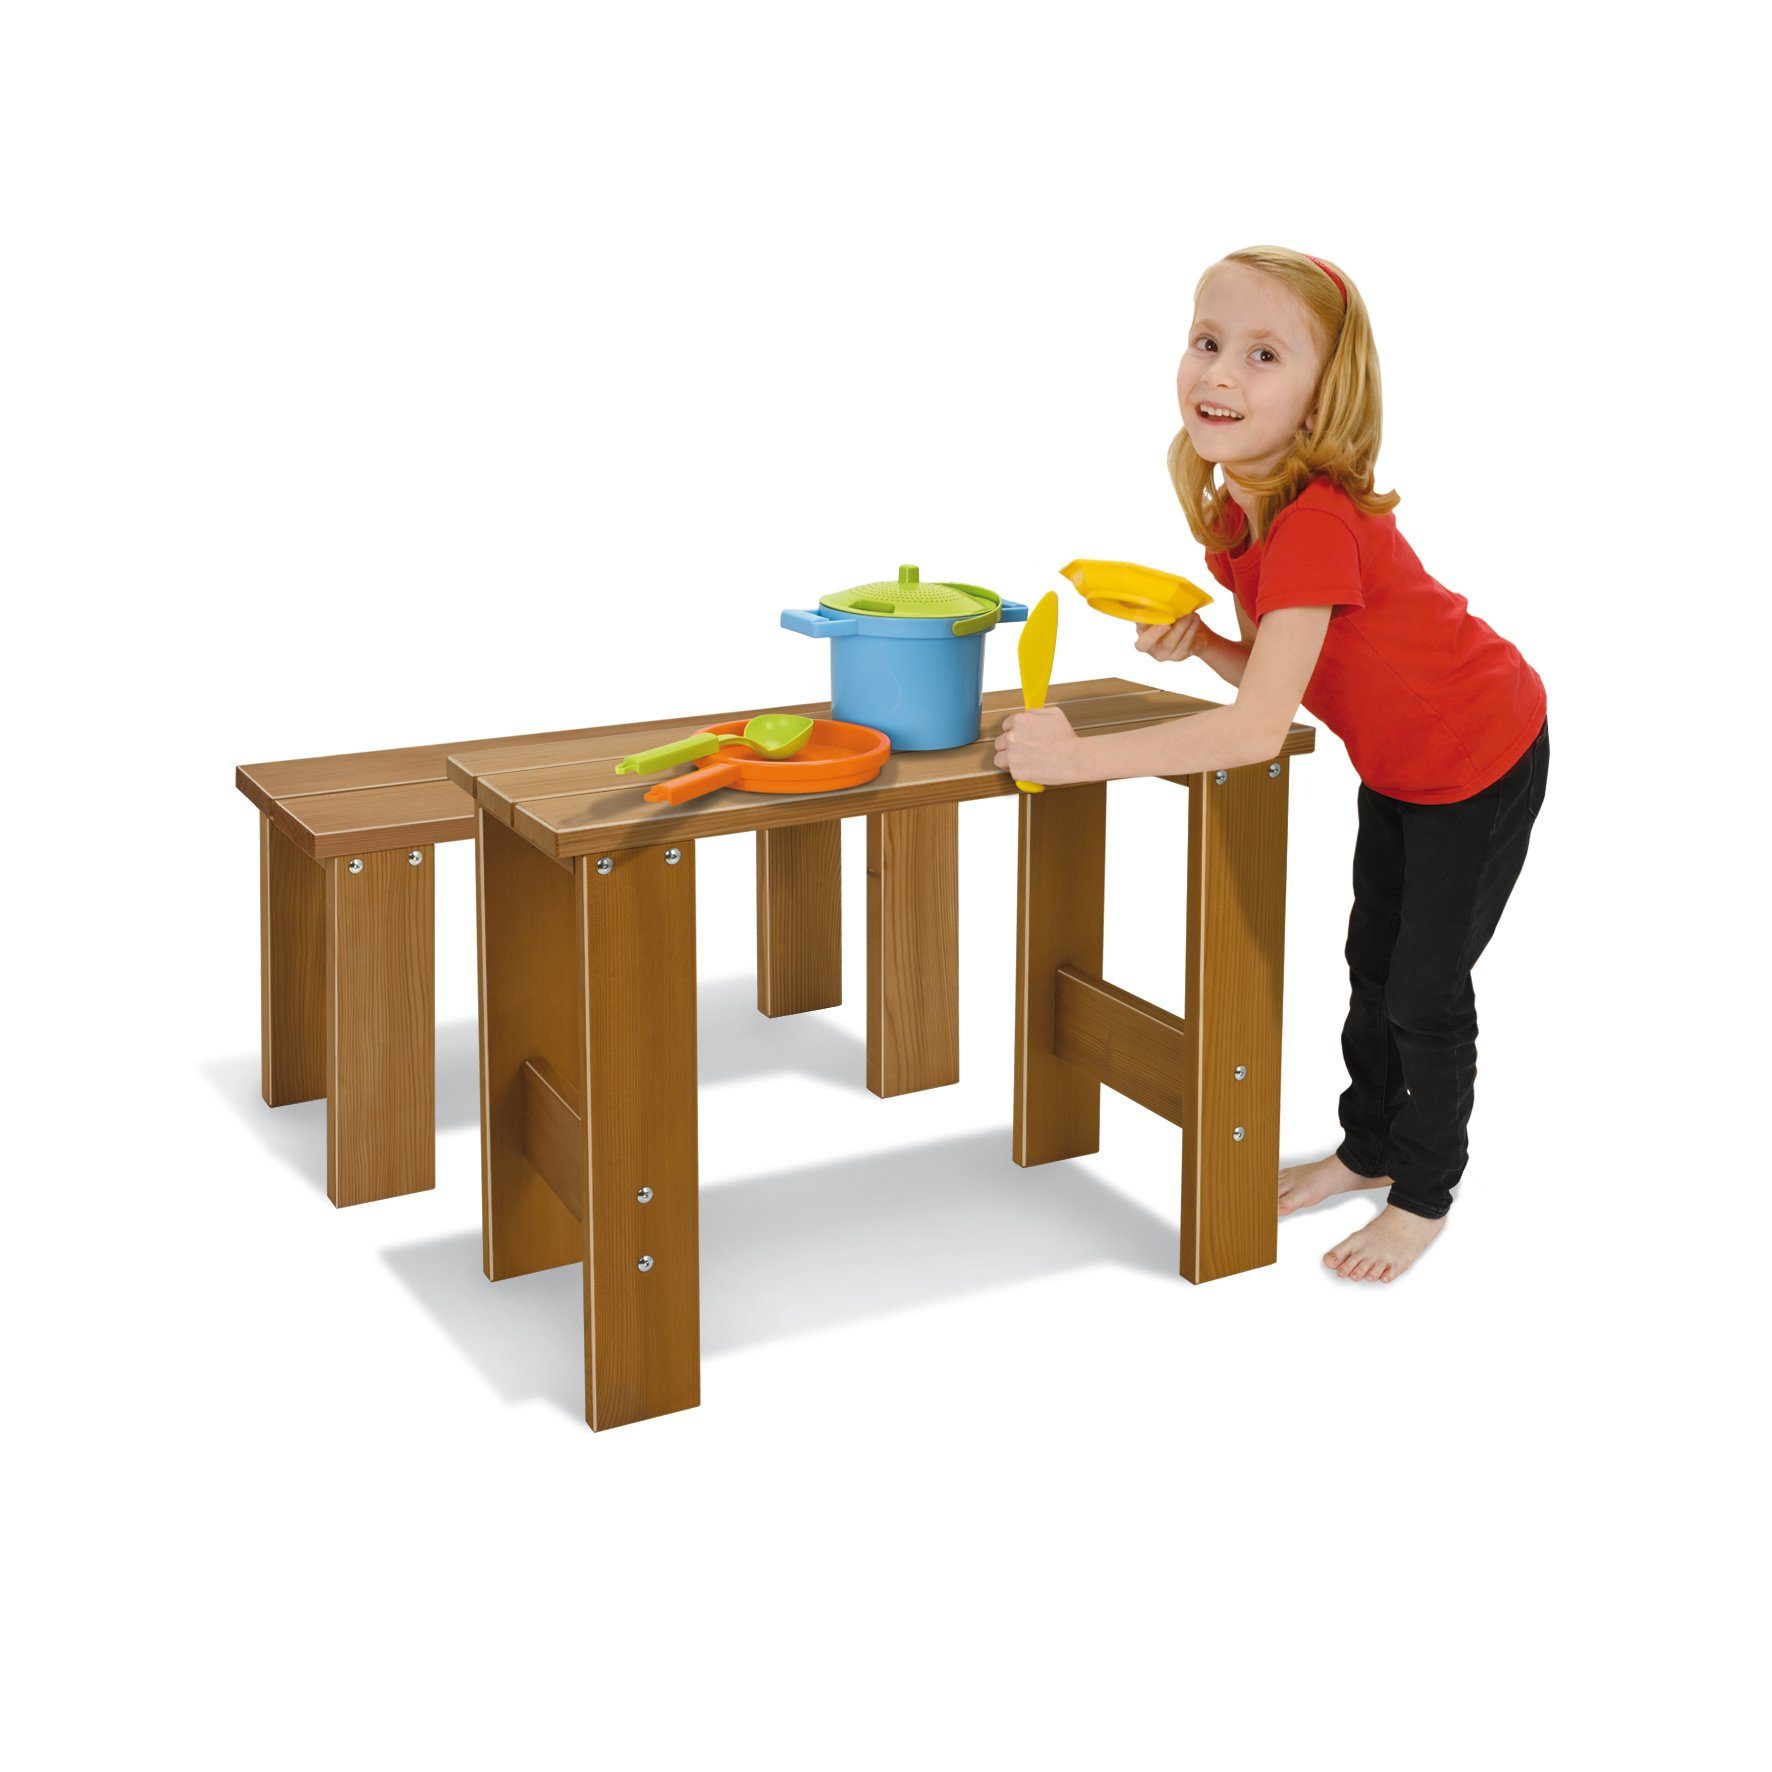 Kindertisch aus cm Nemmer x 56 x Kindertisch cm Nemmer - Tisch Thermoholz cm Outdoor 75 37